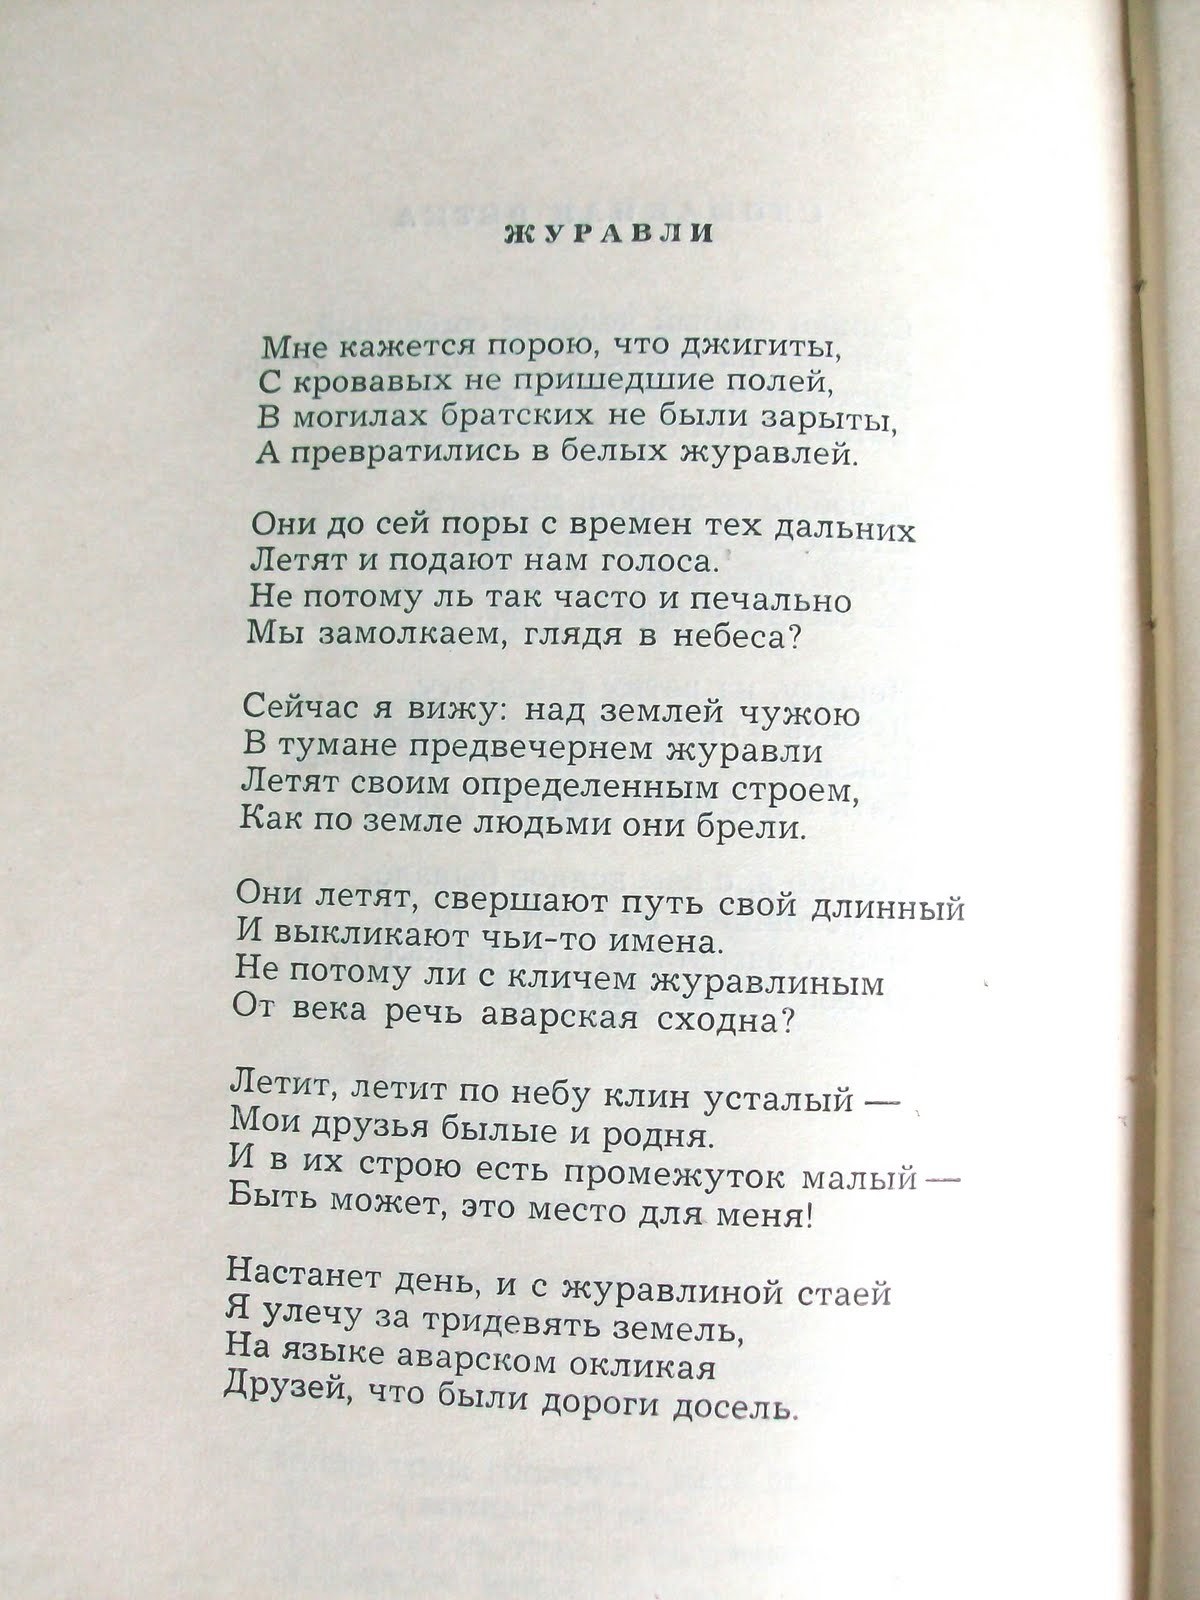 Стихотворение Расула Гамзатова на аварском языке